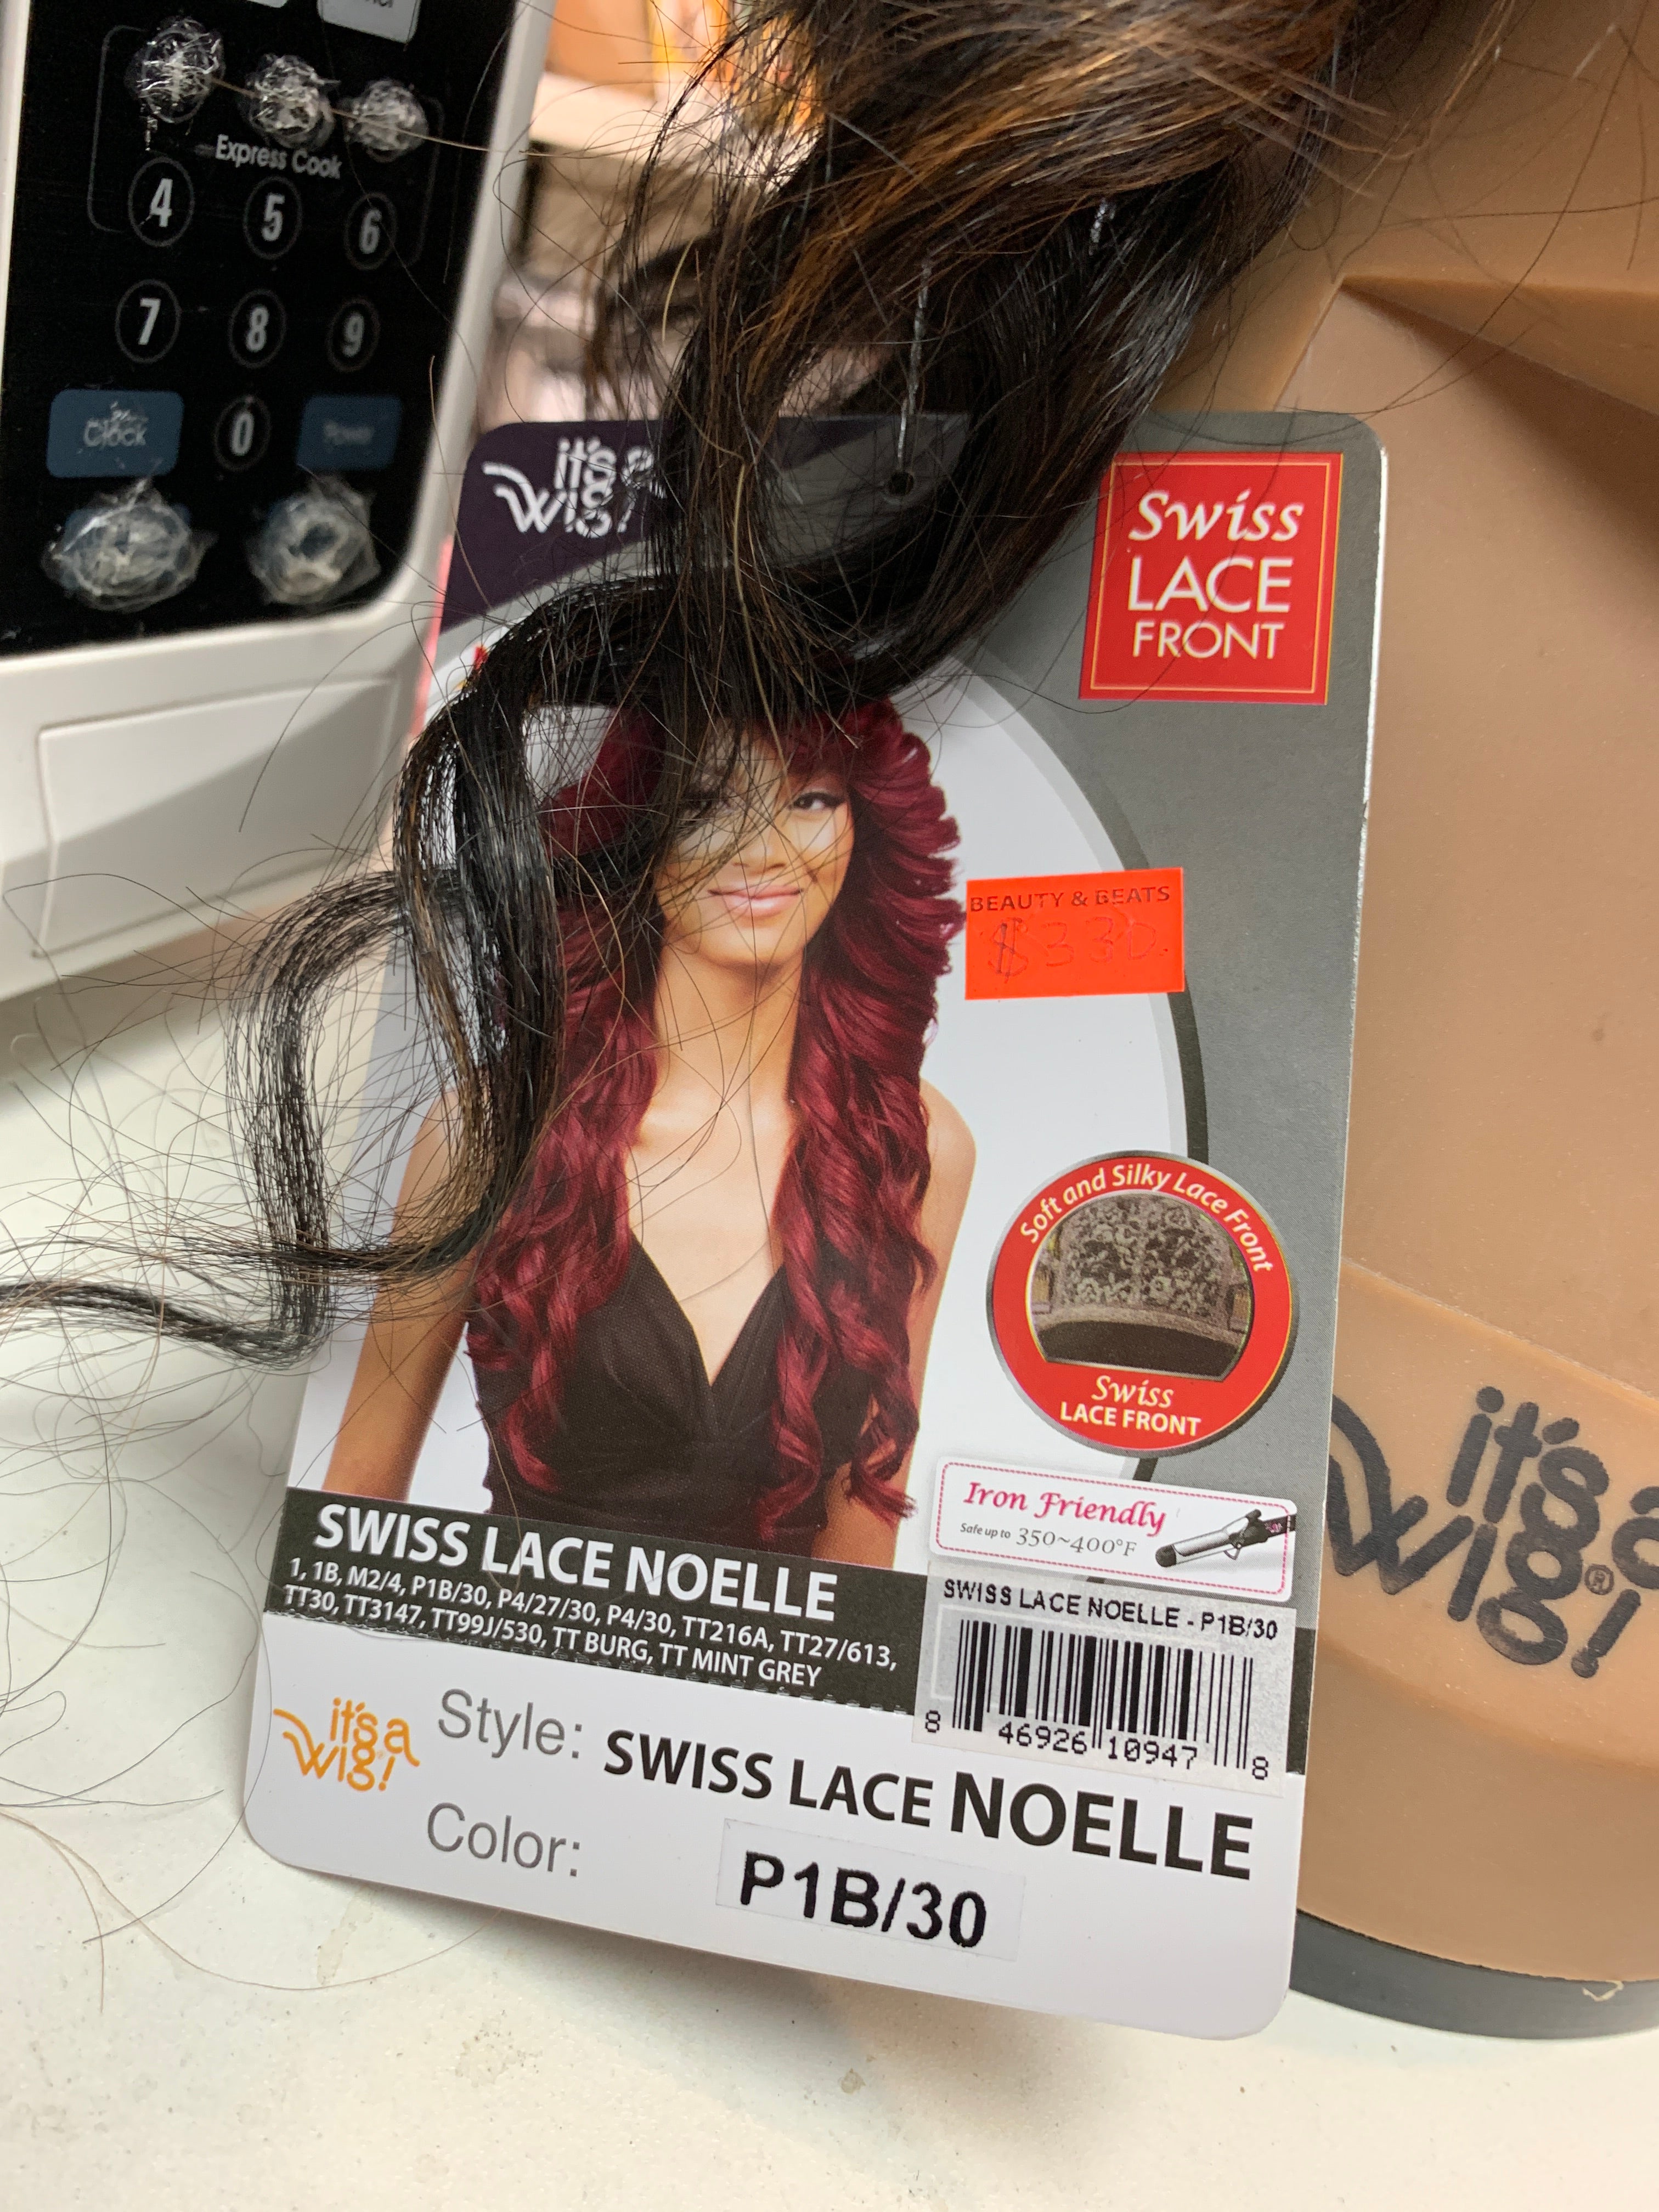 It’s a wig swiss lace Noelle